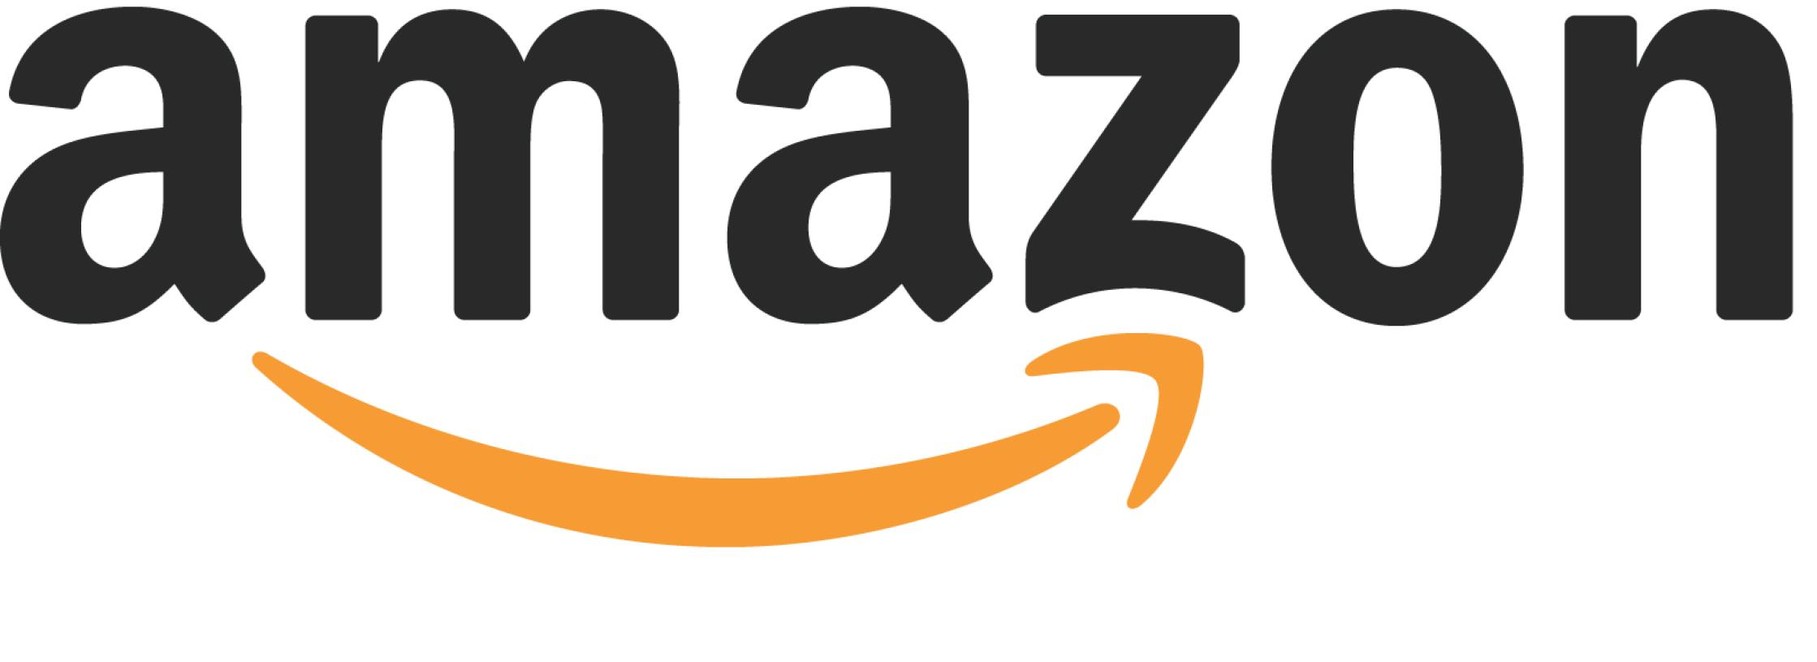 Secret Service, Band 1 Kostet auf Amazone 6,95€ Kostenloser Versand.